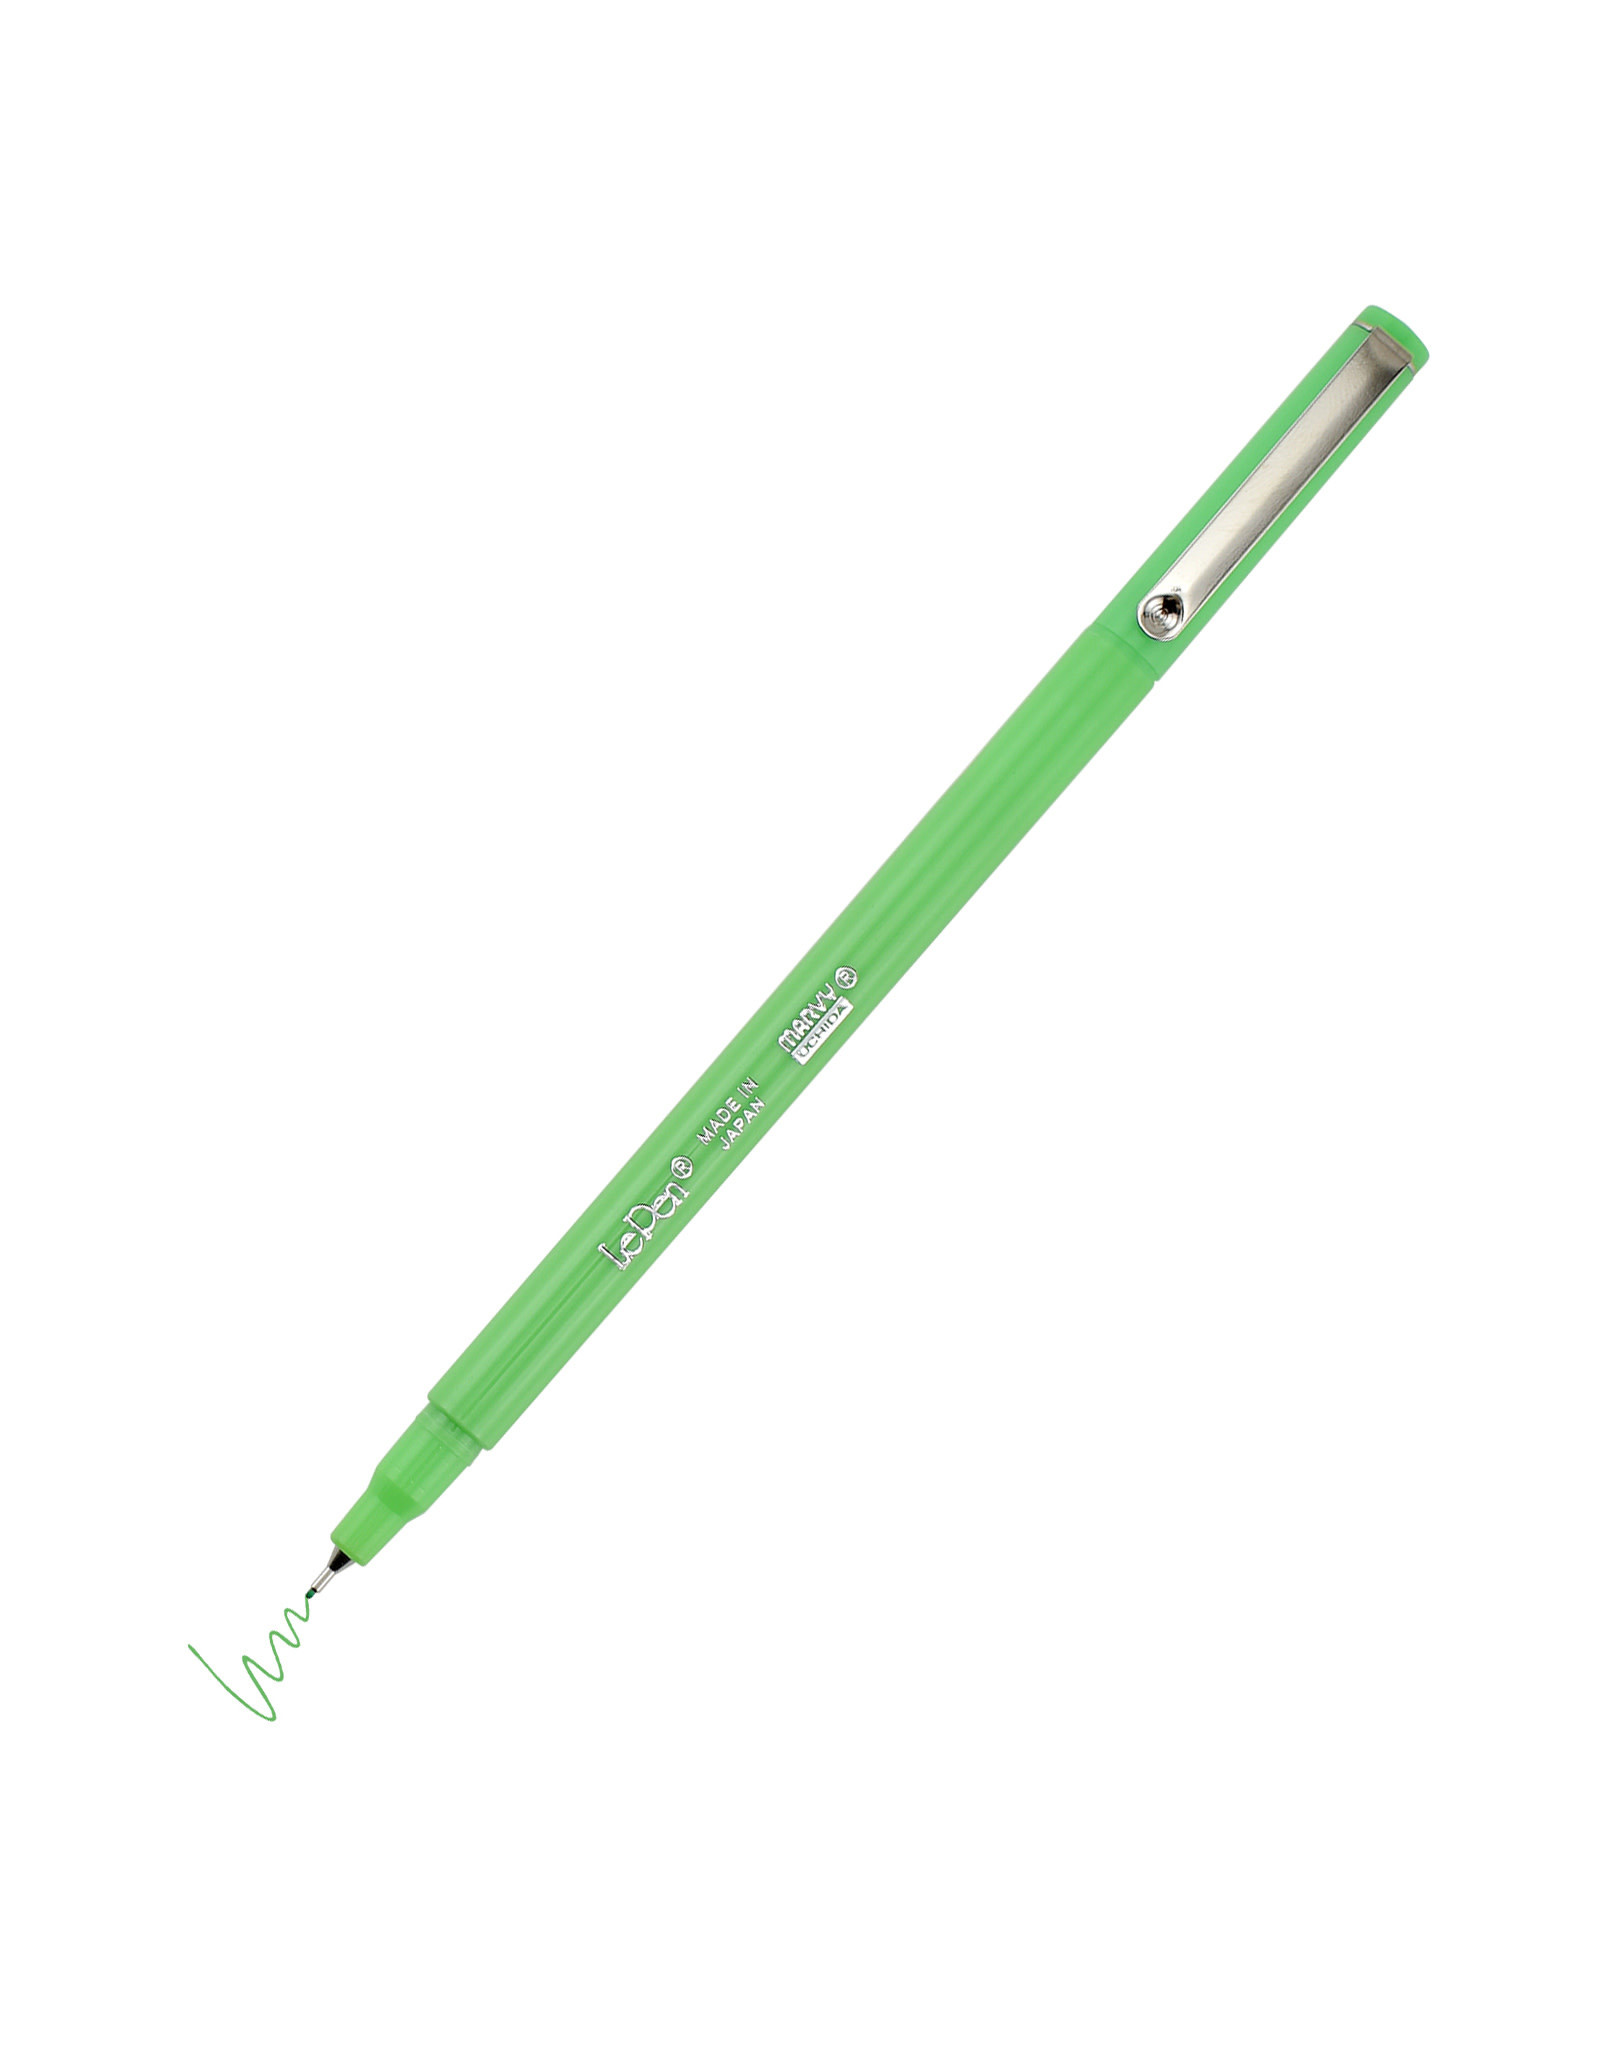 Uchida LePen Fluorescent Green